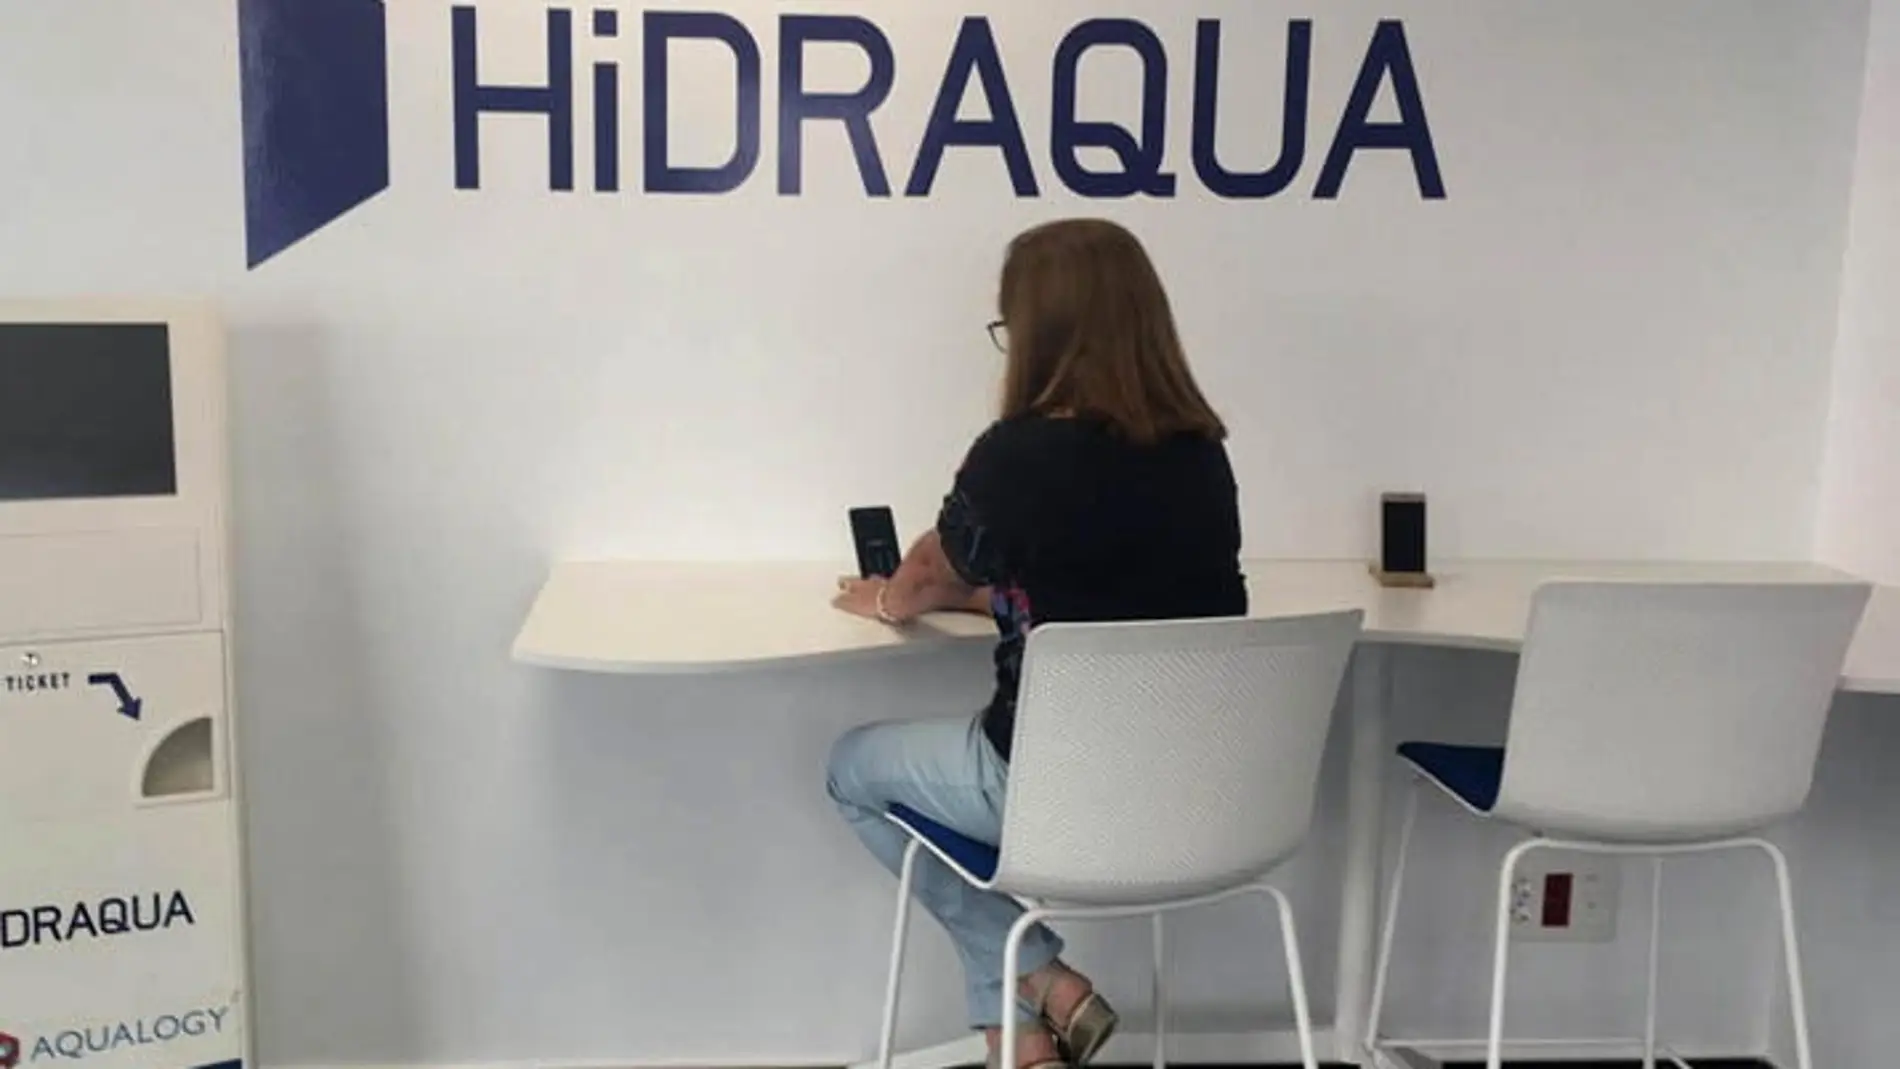 Notable alto para Hidraqua y sus empresas mixtas en el servicio de gestión del agua